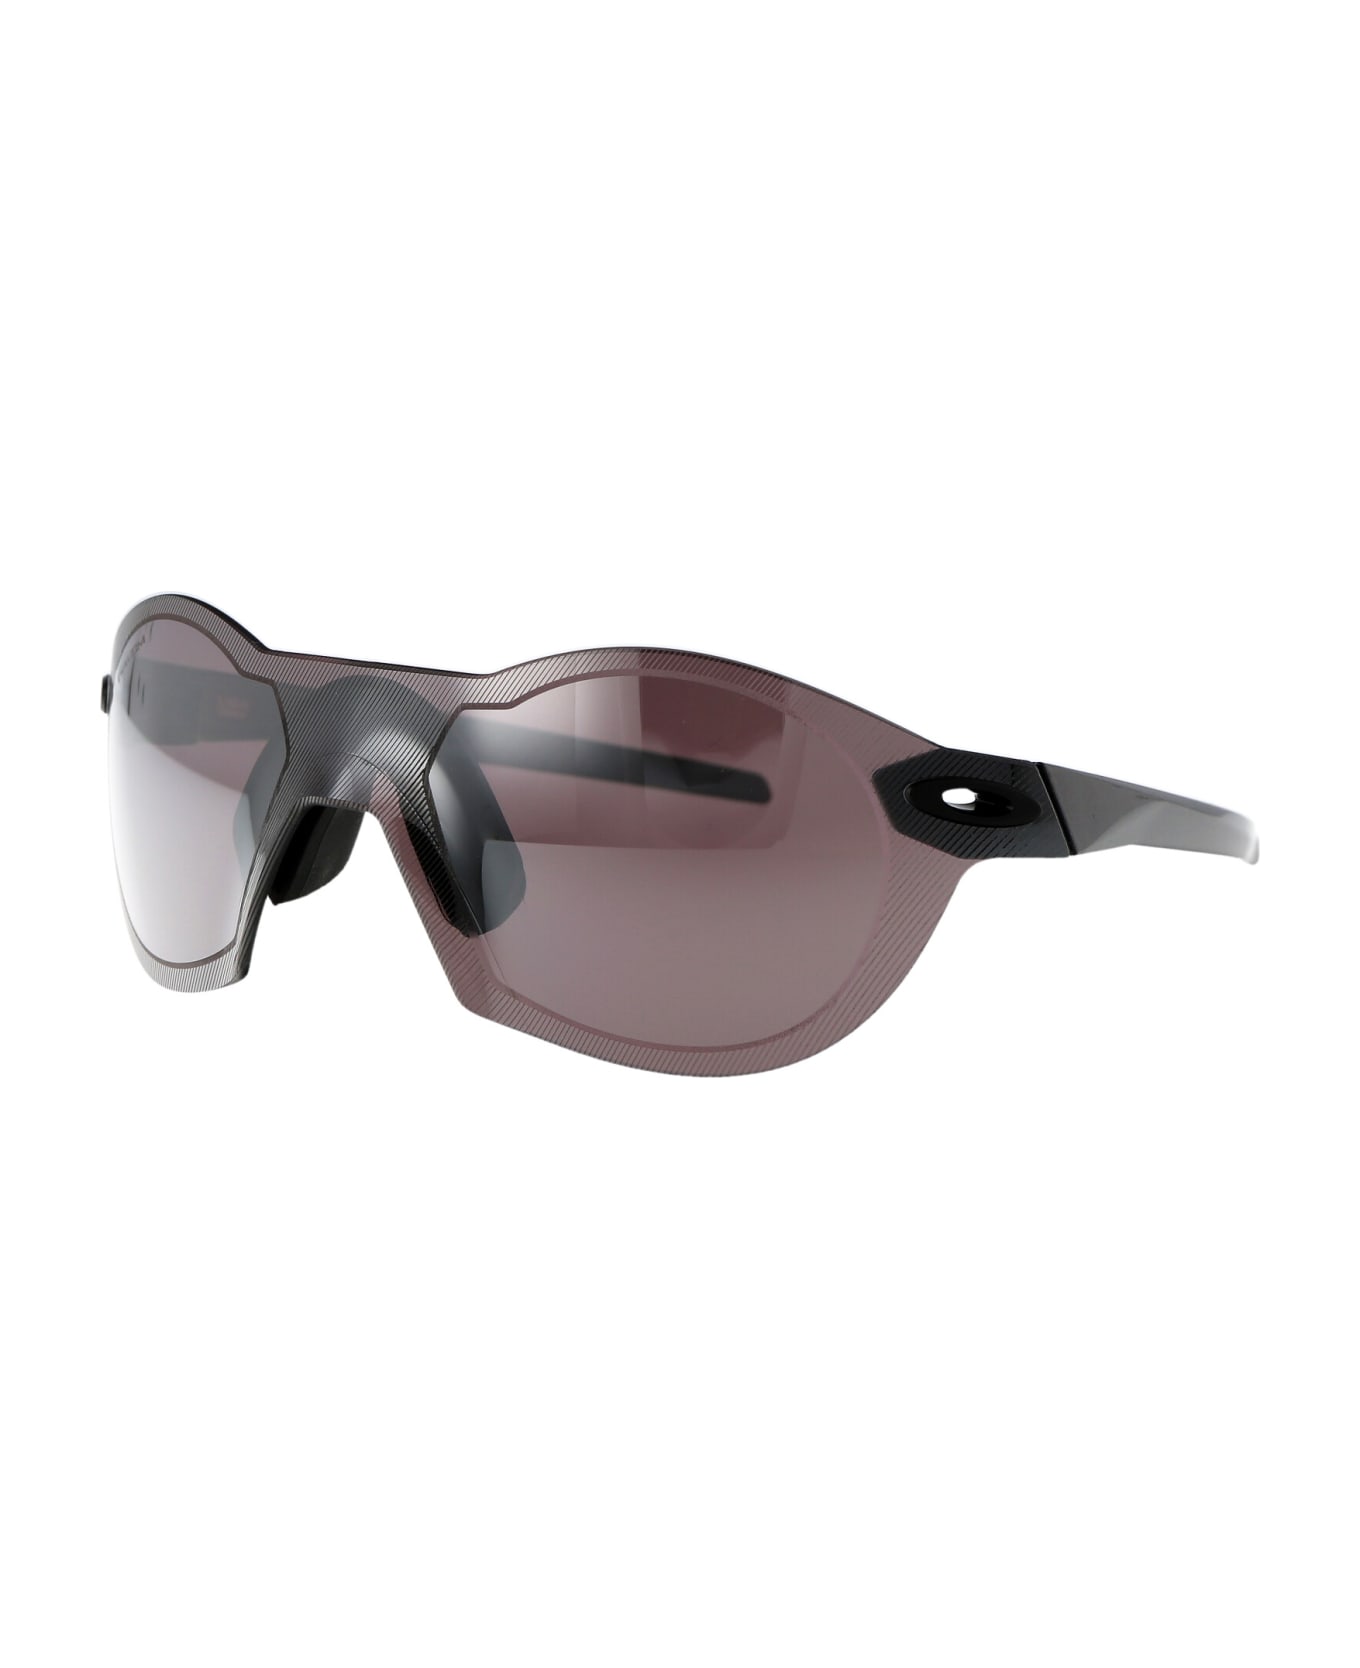 Oakley Re:subzero Sunglasses - Grey/purple